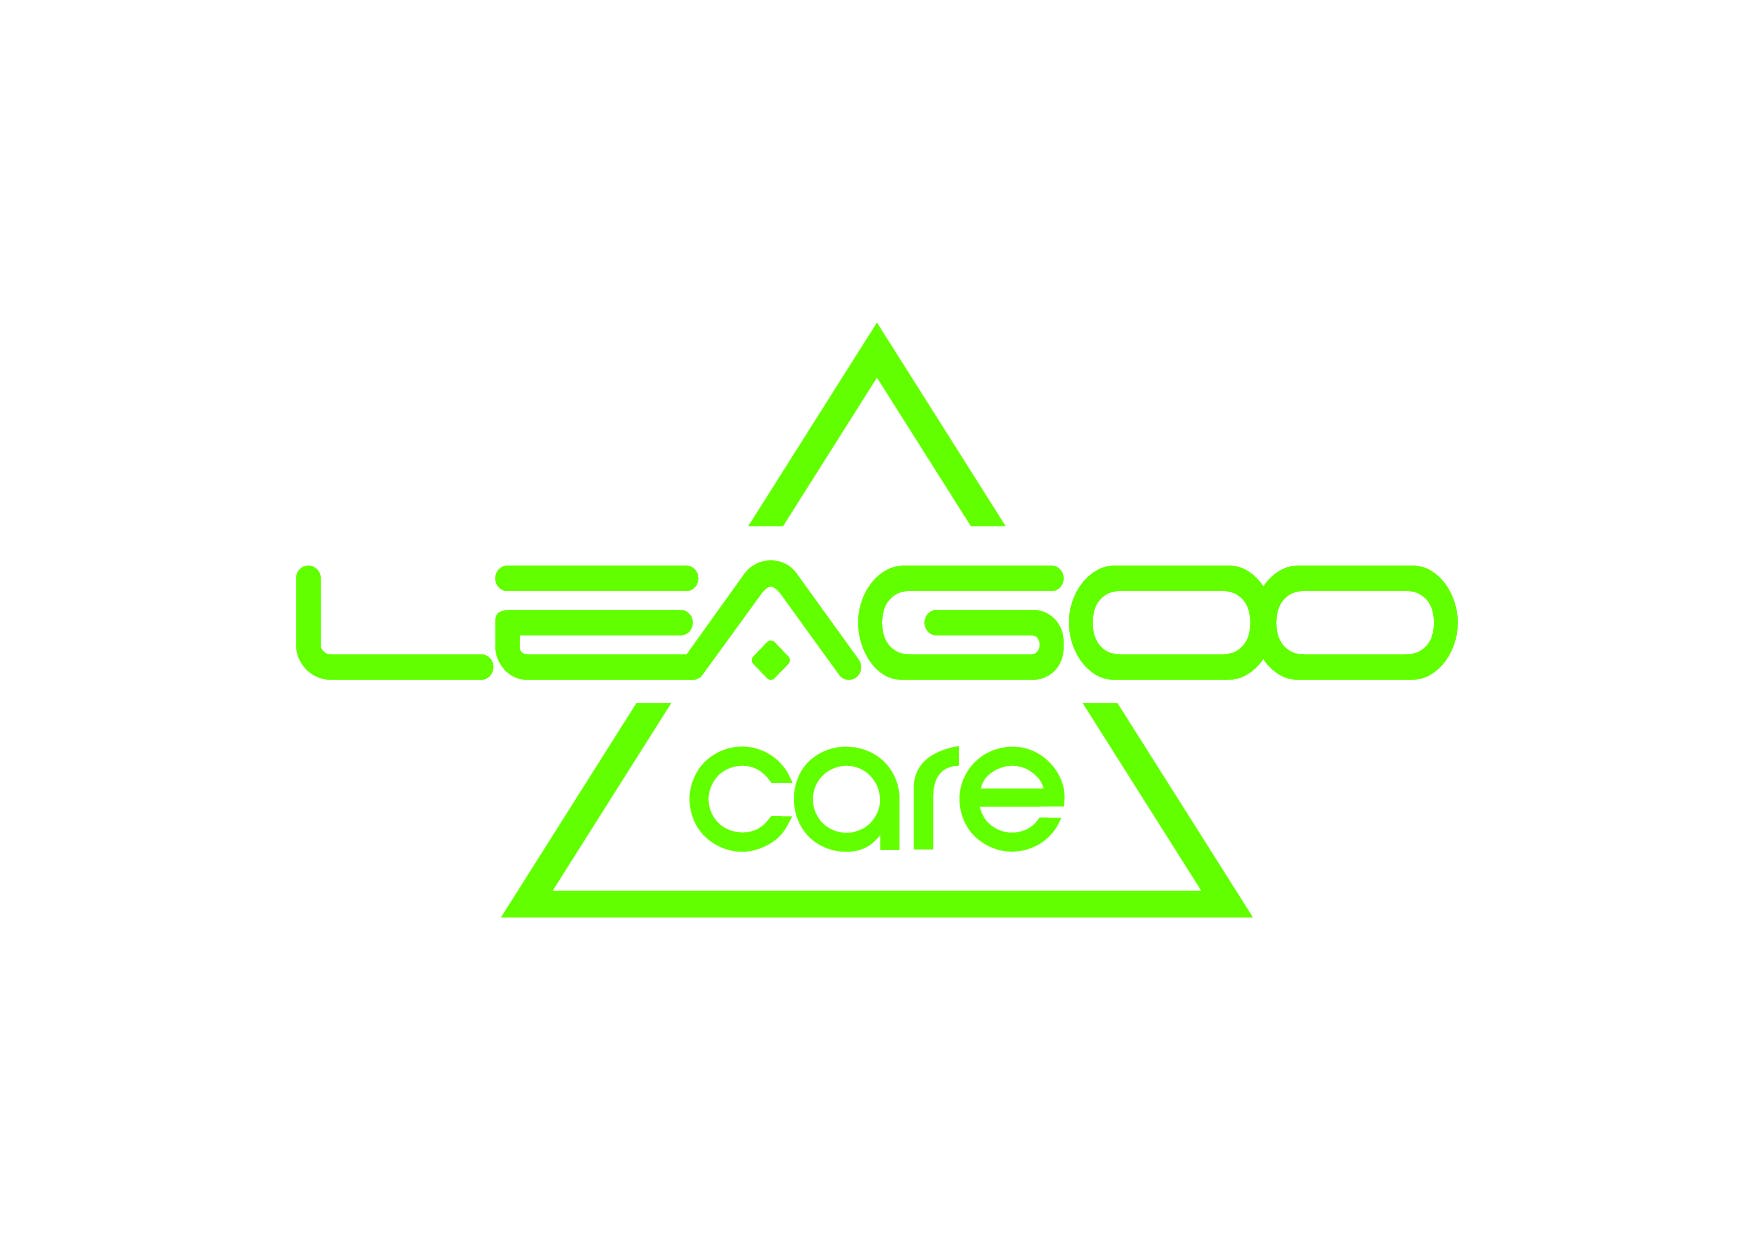 LEAGOO Care logo